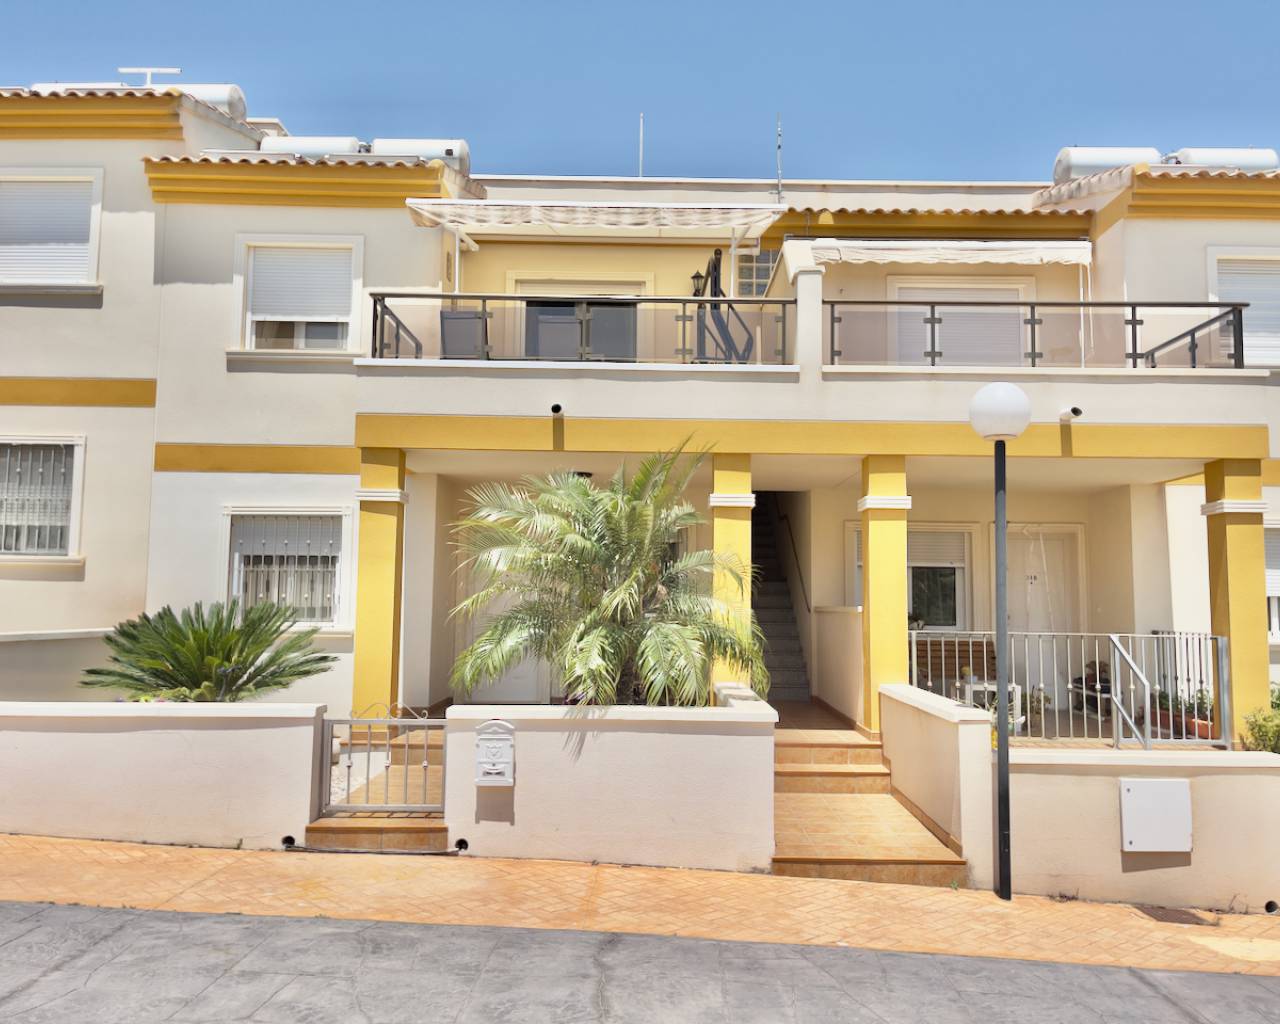 For sale: 2 bedroom house / villa in Bigastro, Costa Blanca